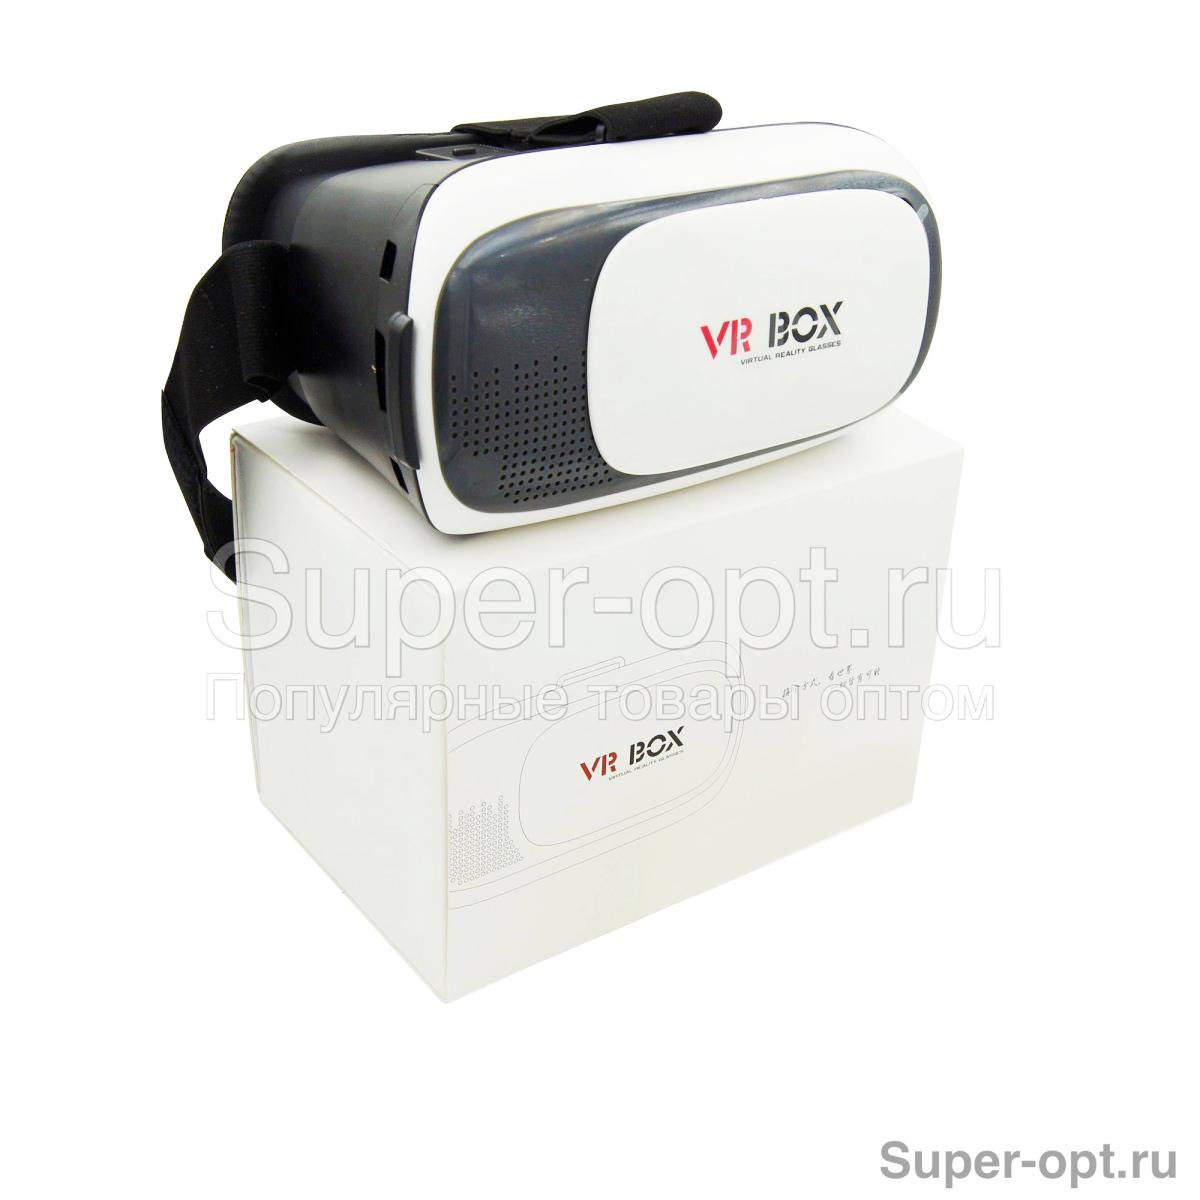 Очки виртуальной реальности VR BOX 2.0 (Original)